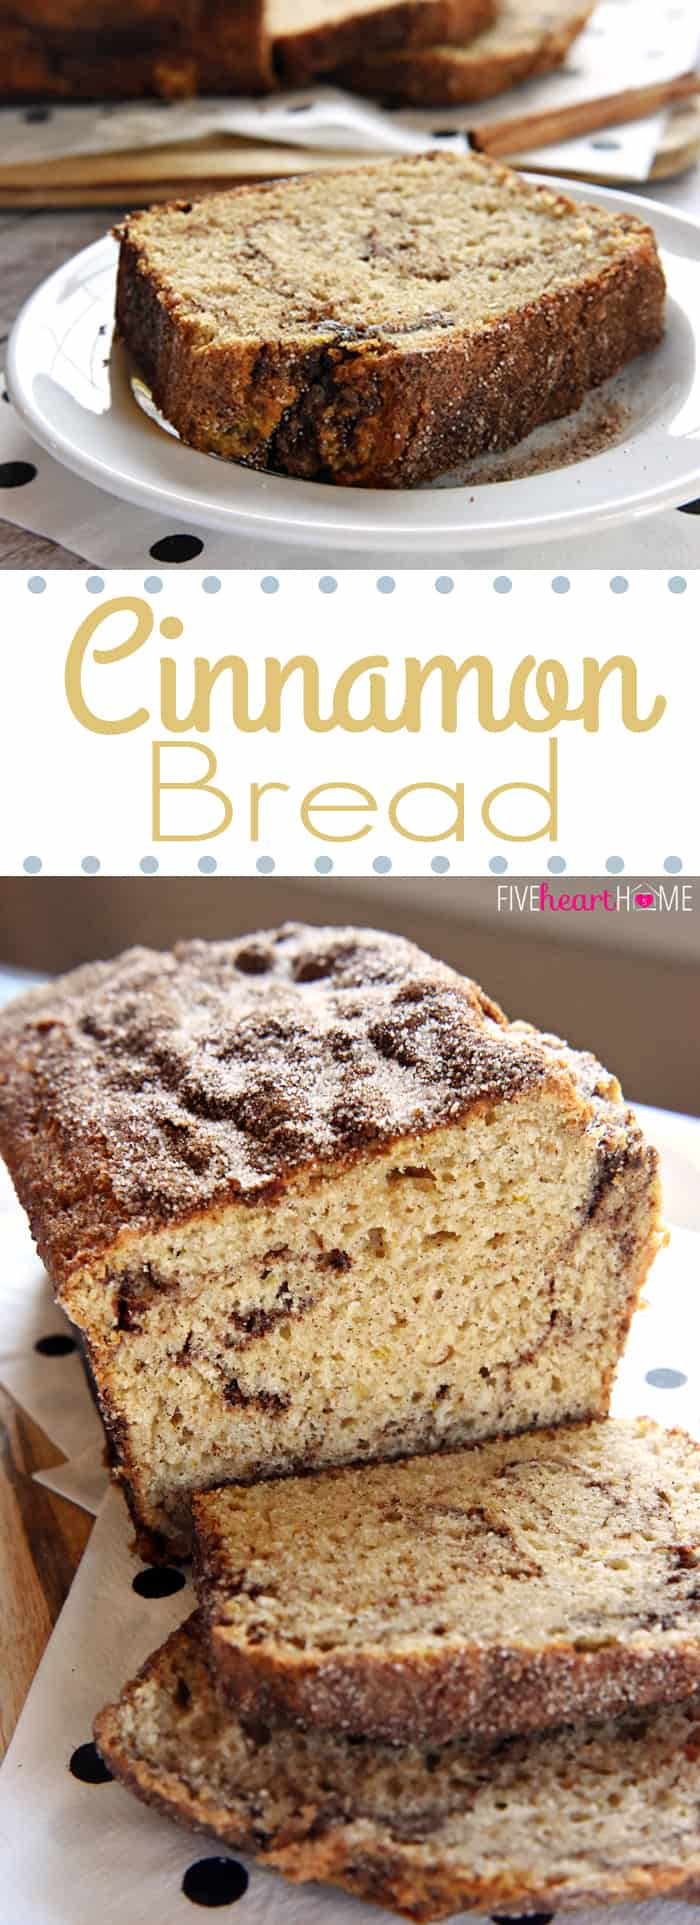 Quick Breakfast Recipes With Bread
 Cinnamon Bread No Yeast Quick Bread